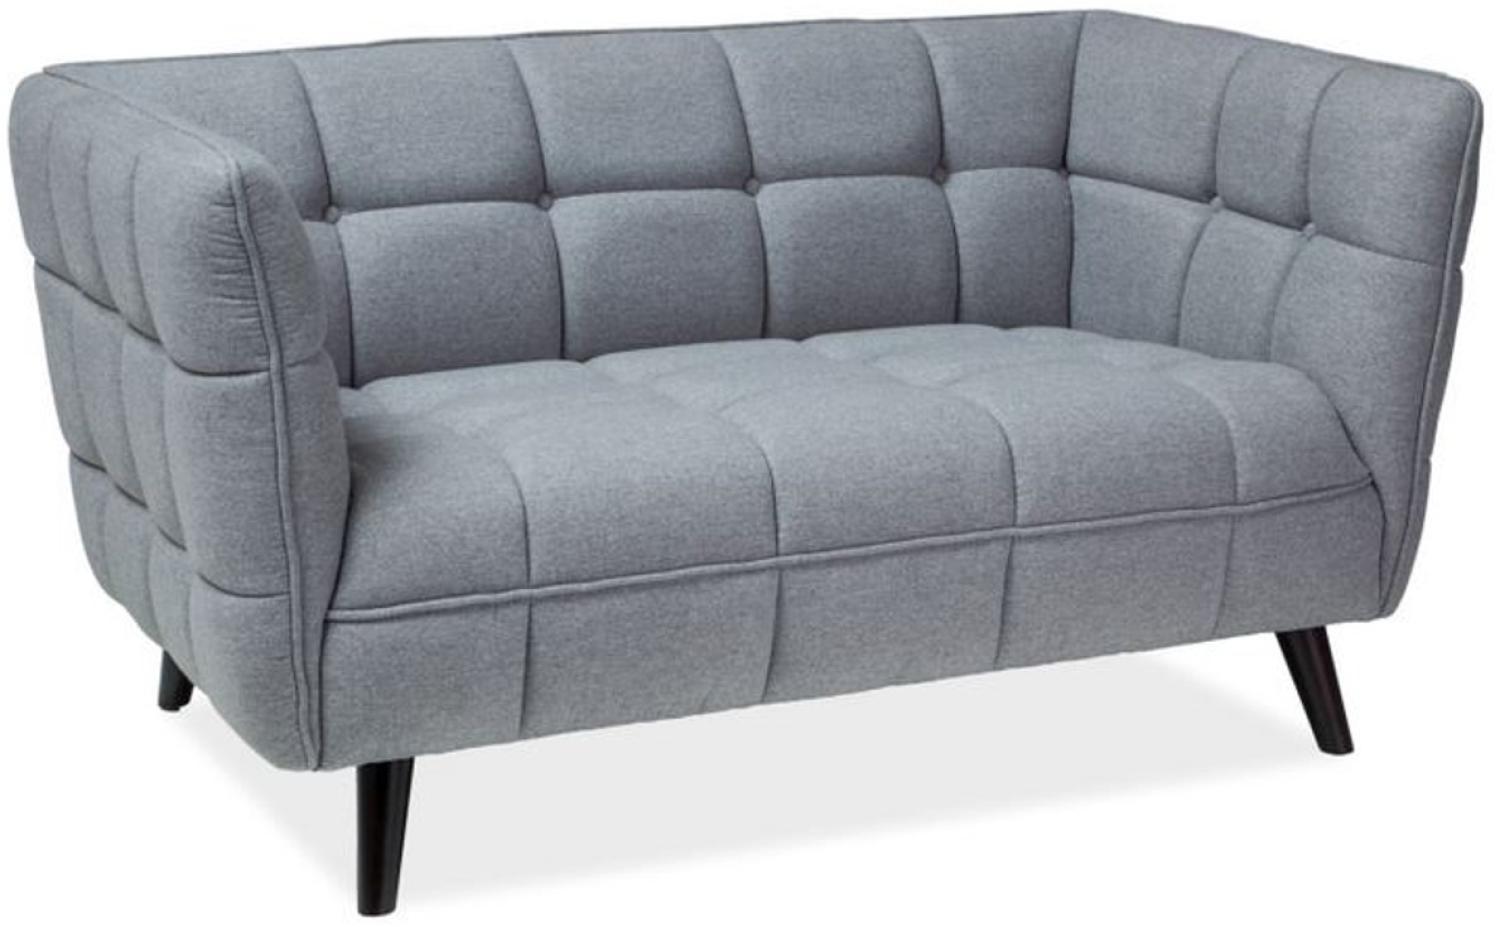 Casa Padrino Luxus Sofa Grau / Schwarz 142 x 85 x H. 78 cm - Wohnzimmer Couch - Luxus Möbel Bild 1